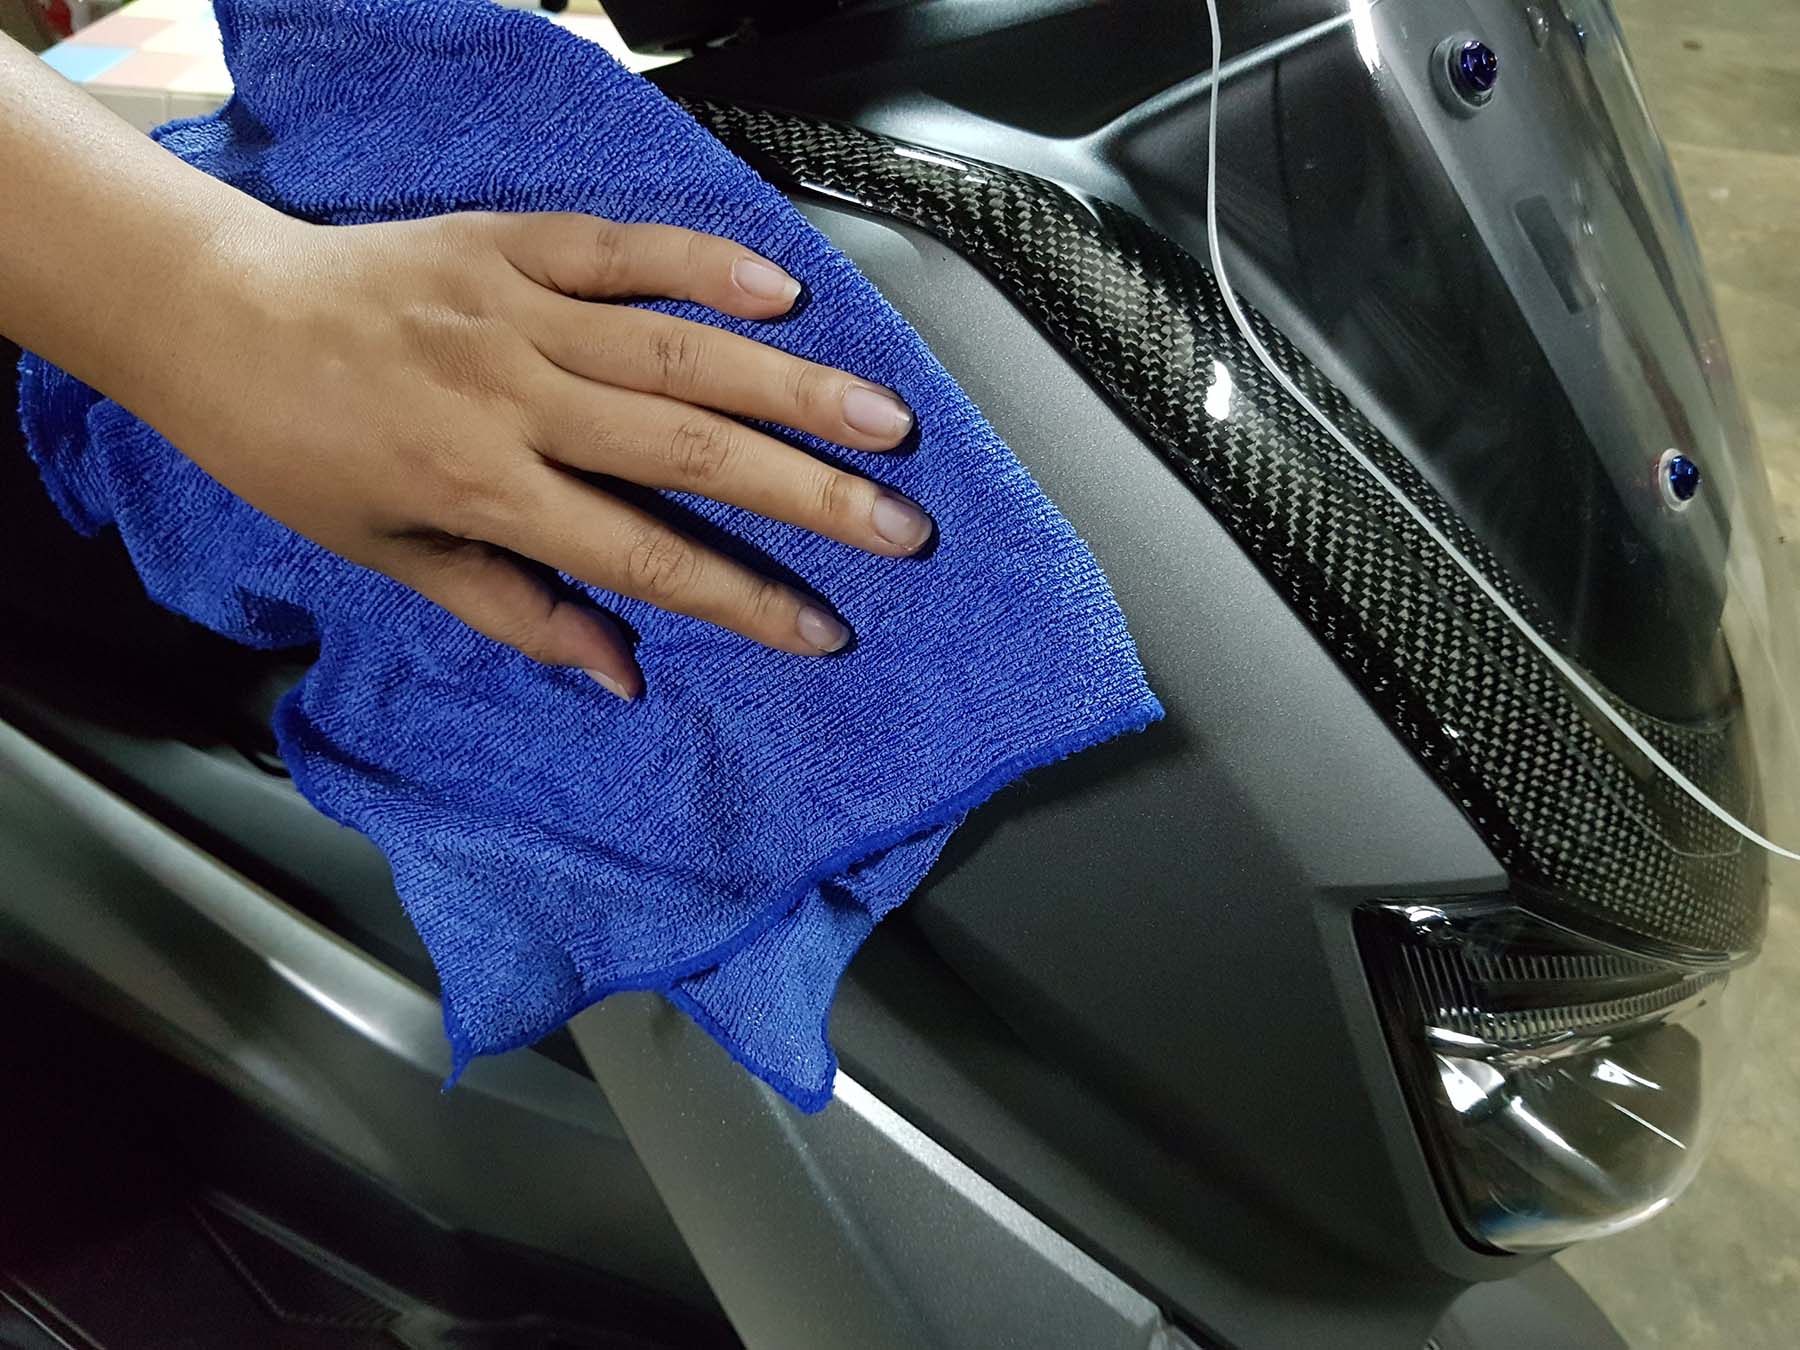 limpiar parabrisas de motocicleta con toalla de microfibra y aspecto brillante de la motocicleta después de la limpieza